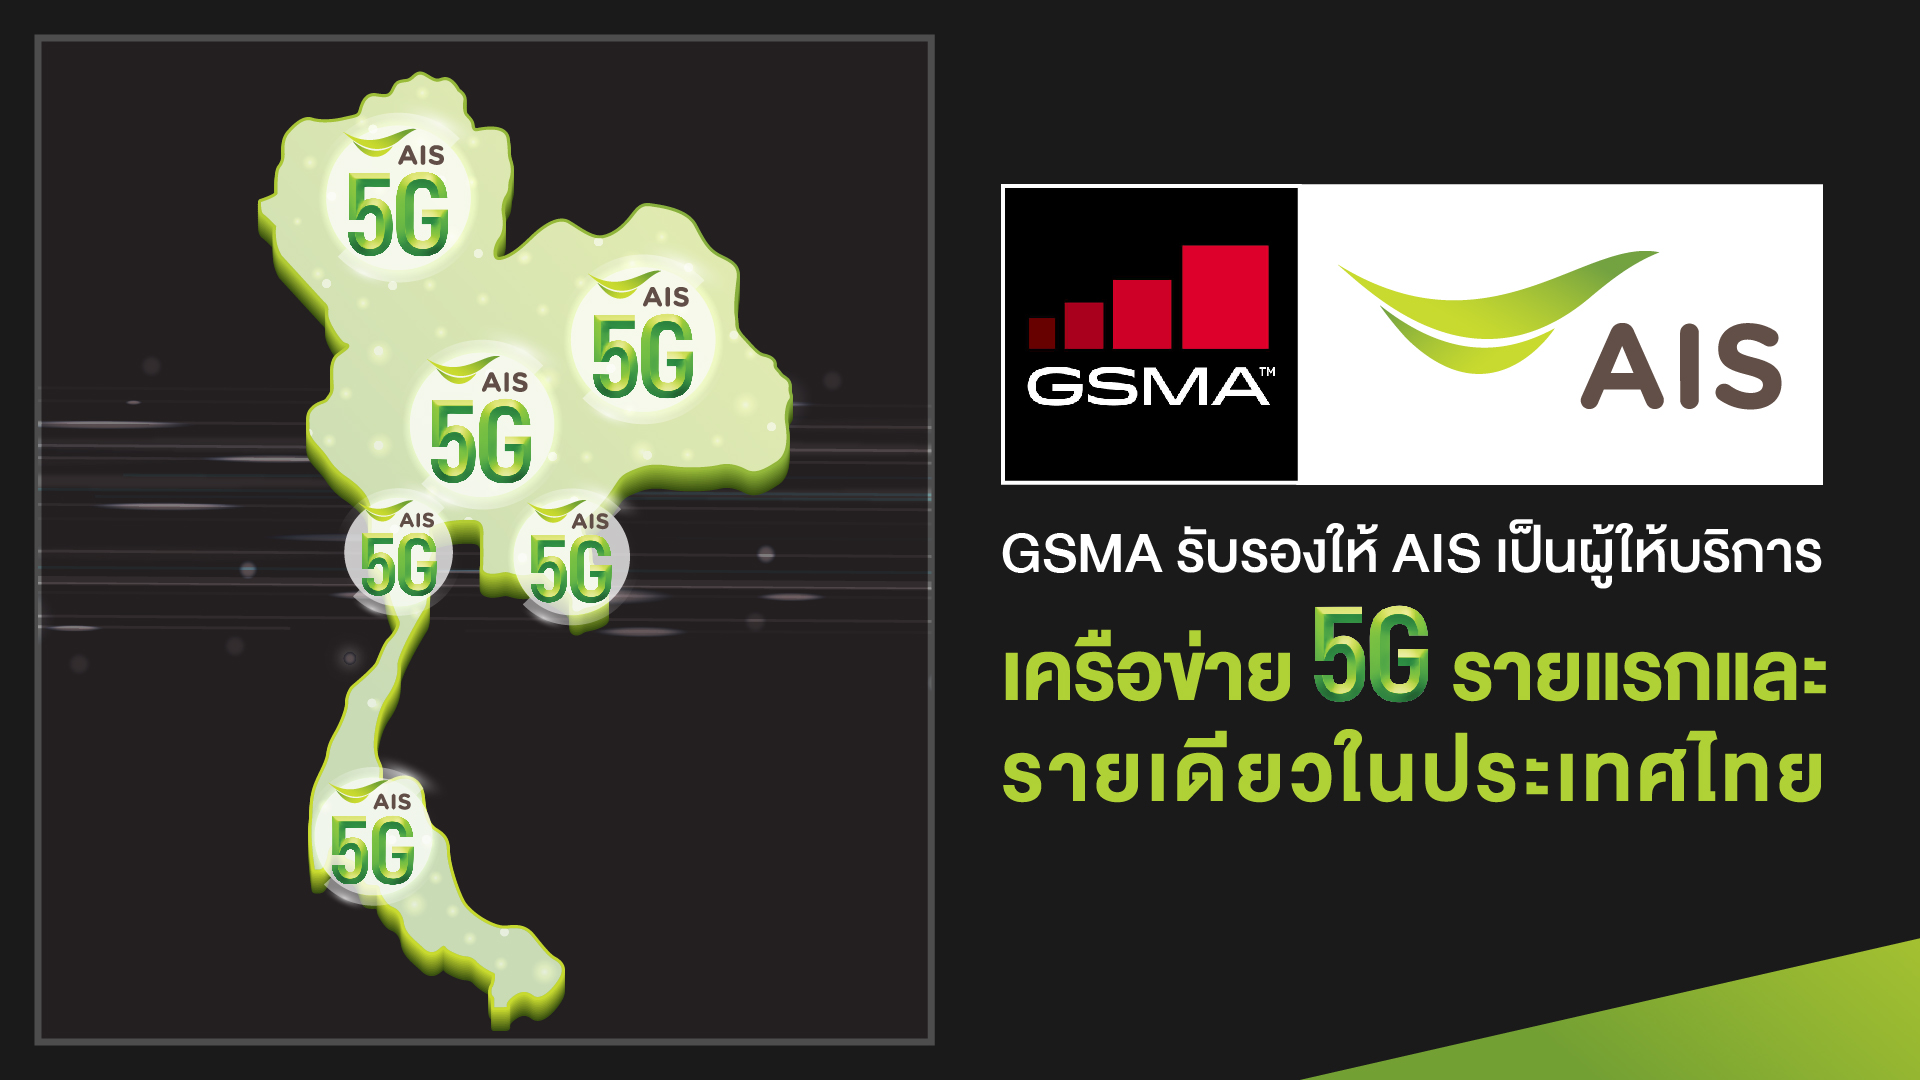 GSMA ประกาศ AIS เป็นผู้ให้บริการเครือข่าย 5G รายแรกในไทย พร้อมปักหมุดไทยเป็นประเทศแรกที่ให้บริการ 5G บนมือถือใน SEA